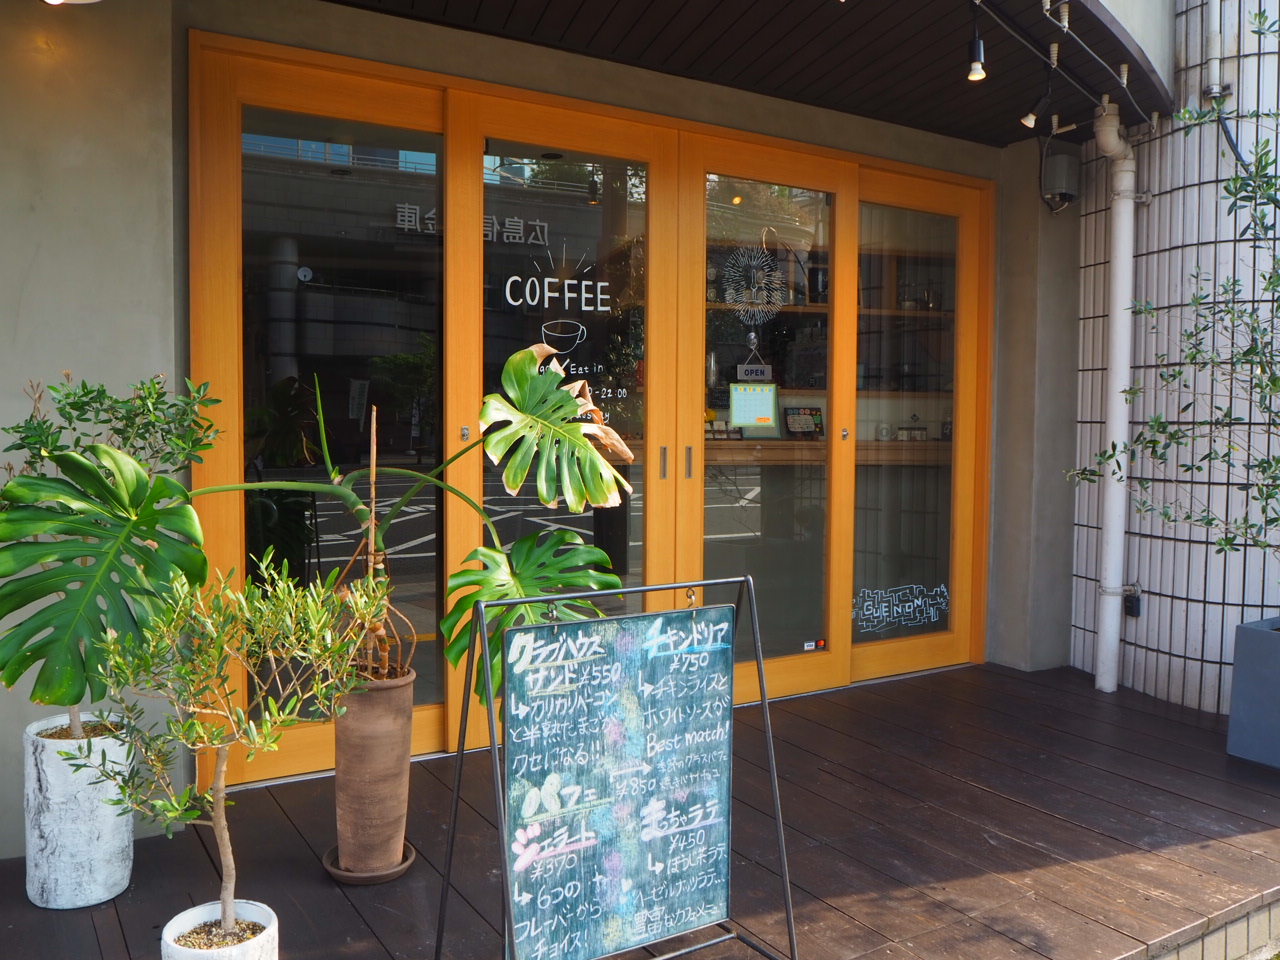 Guenon De Cafe 手作りジェラートが美味しい 夜までopenしている横川カフェ